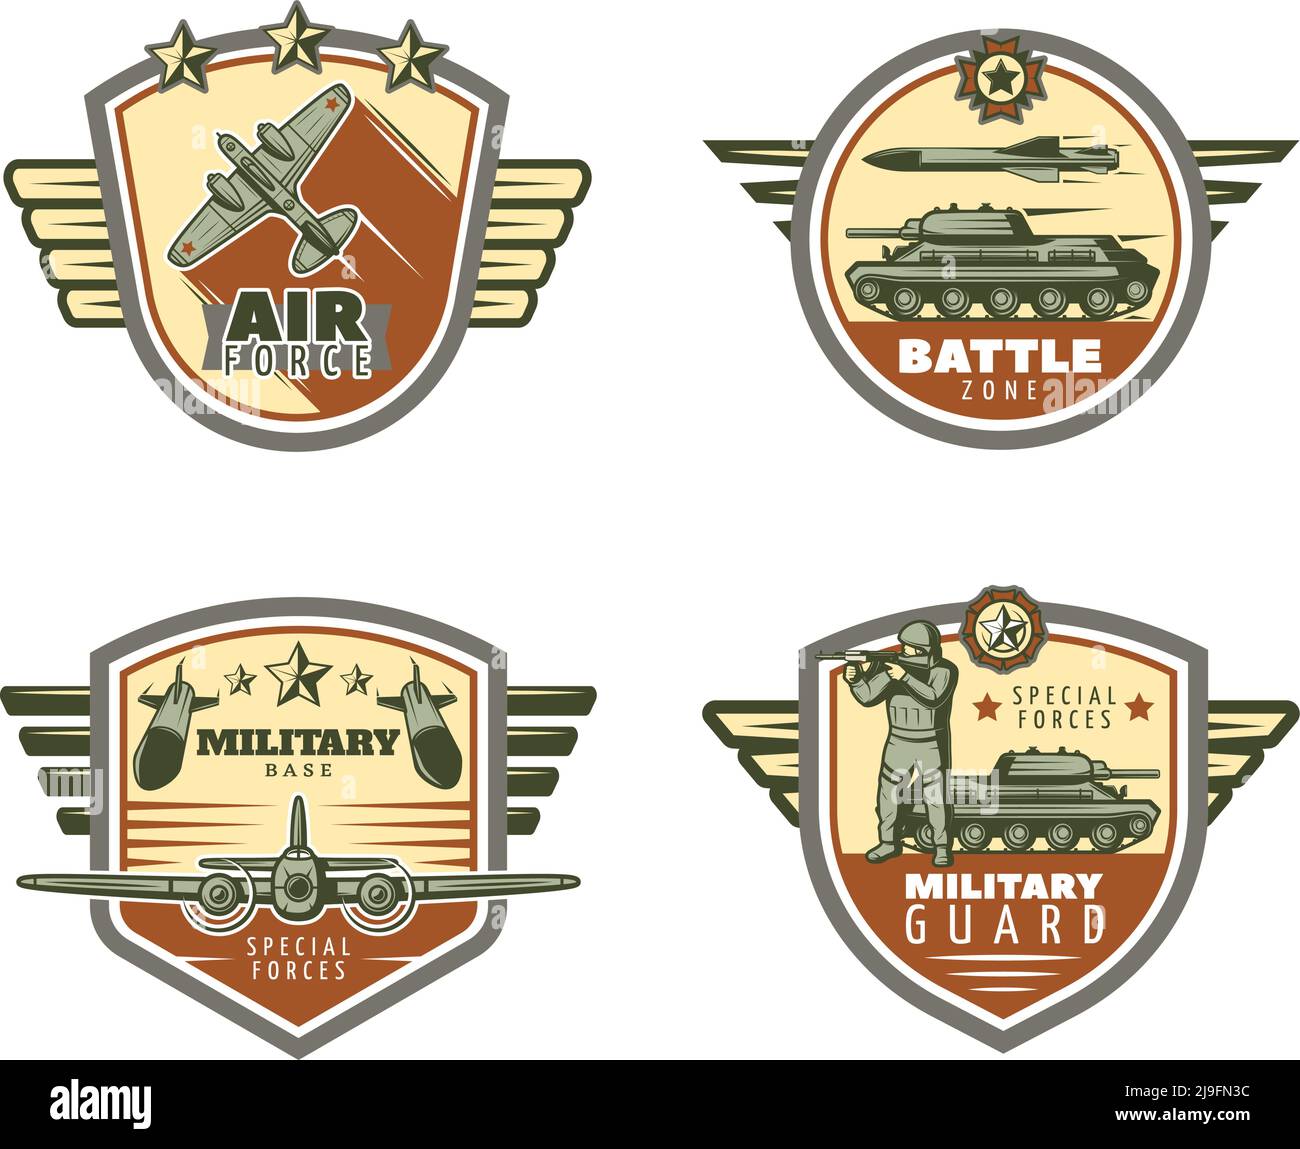 Emblèmes militaires vintage colorés avec air et force au sol missiles soldats soldat illustration vectorielle isolée Illustration de Vecteur